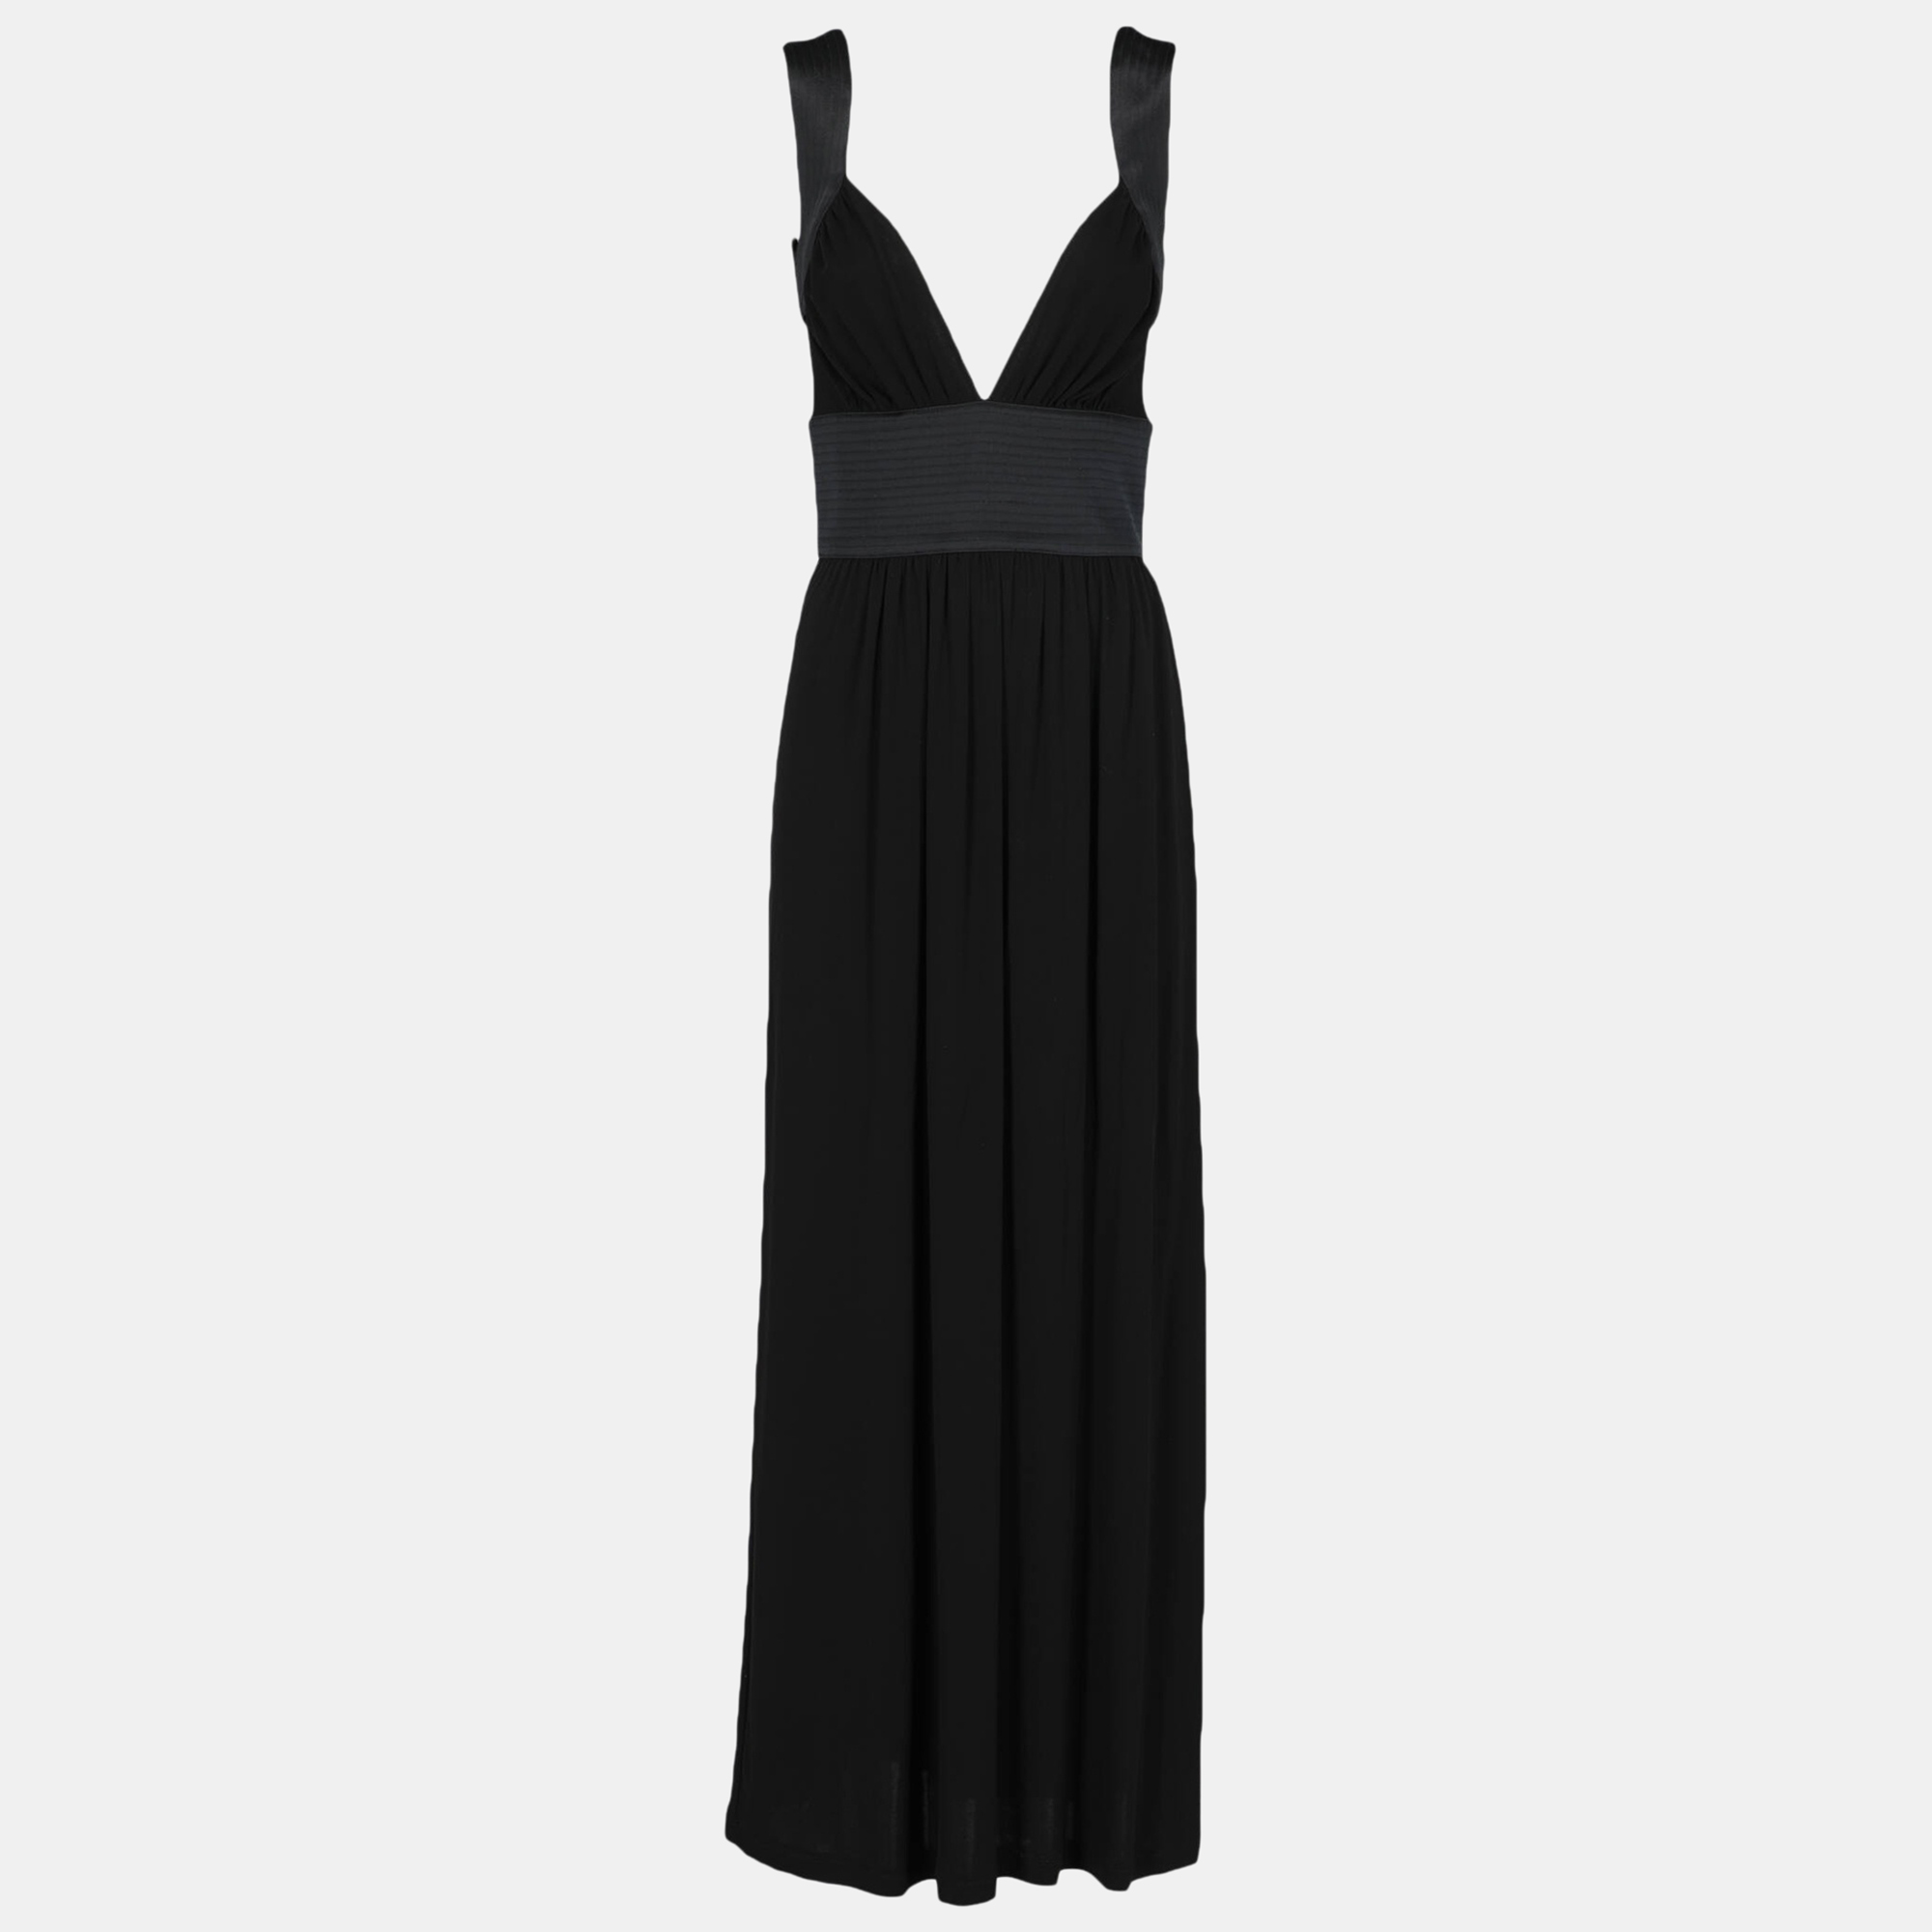 Celine  Women's Synthetic Fibers Long Dress - Black - M